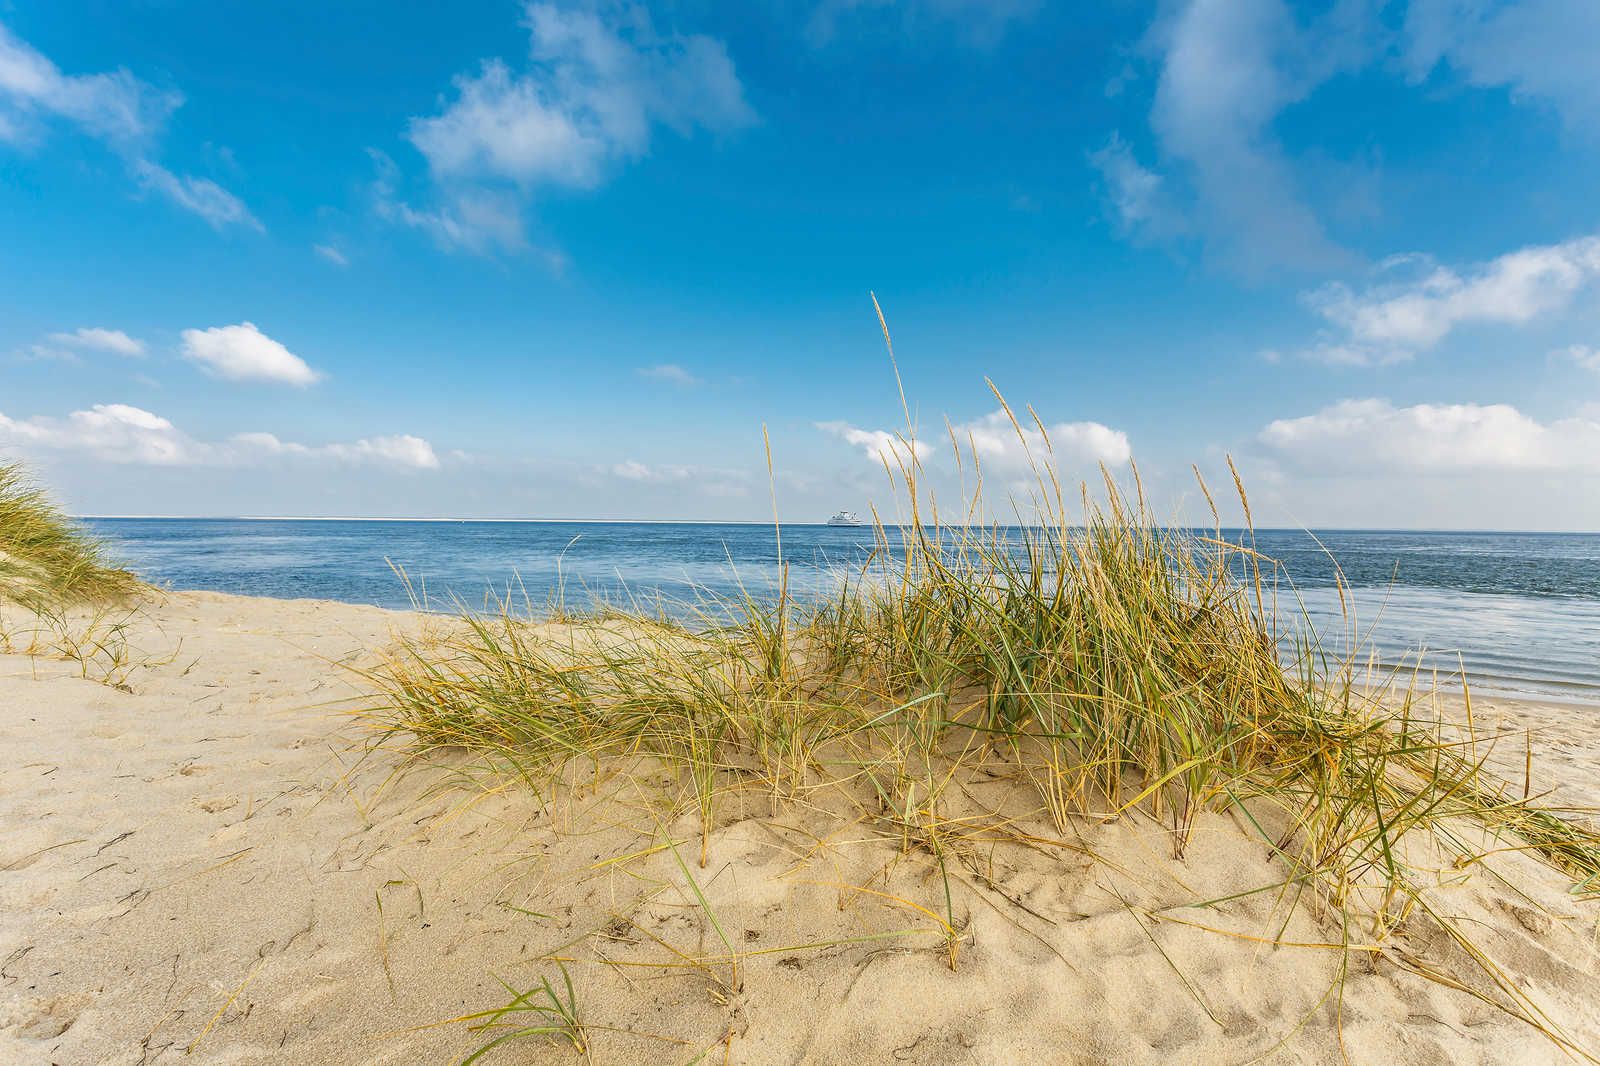             Cuadro Paisaje costero con playa de dunas - 0,90 m x 0,60 m
        